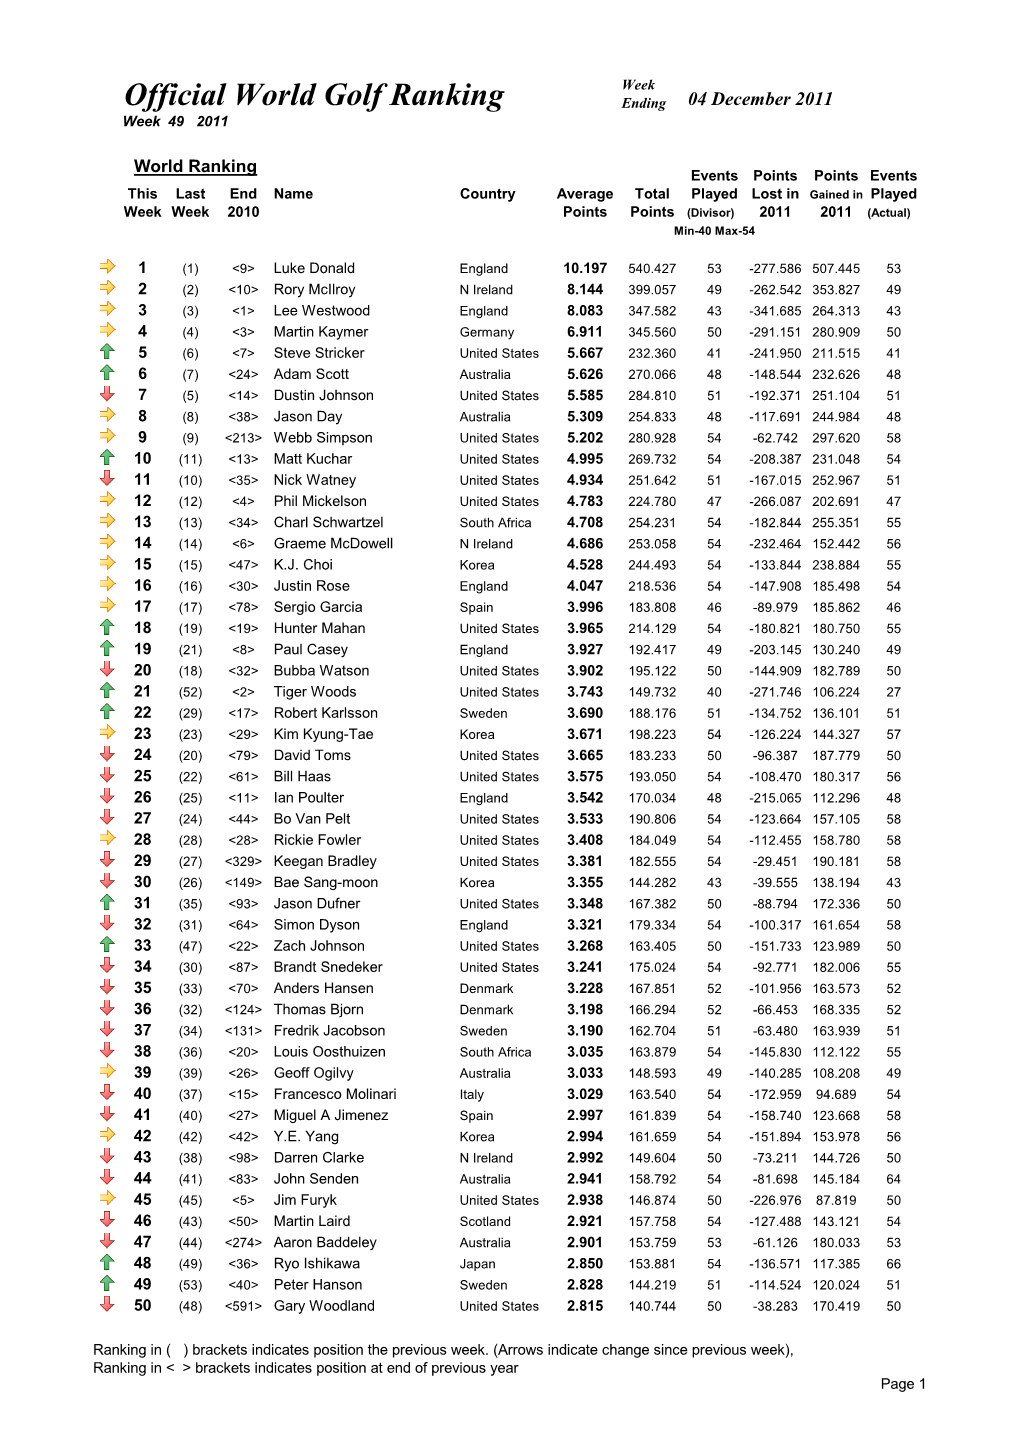 Official World Golf Ranking Ending 04 December 2011 Week 49 2011